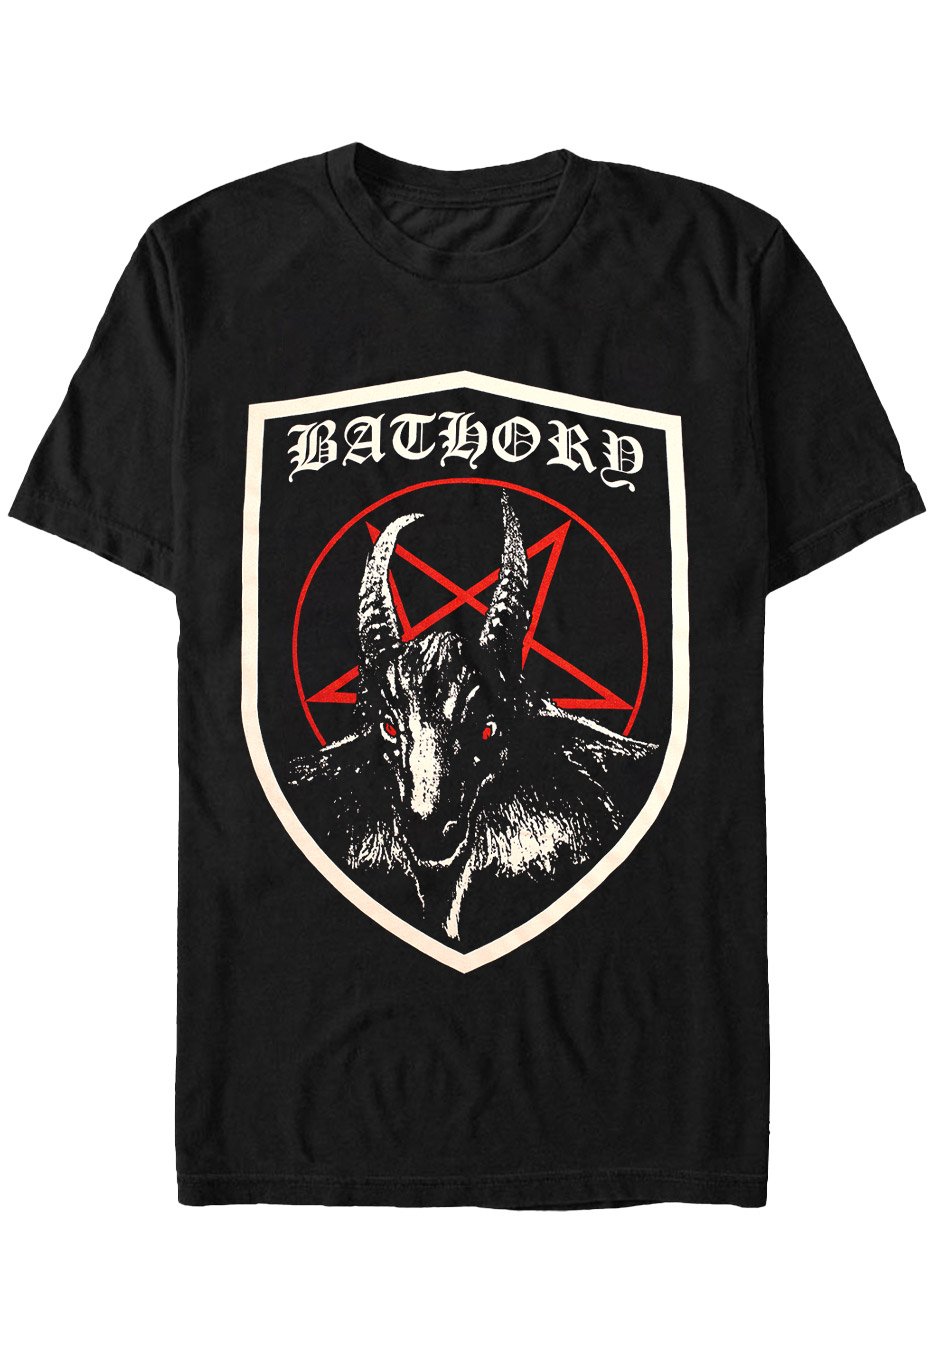 Bathory - Shield - T-Shirt